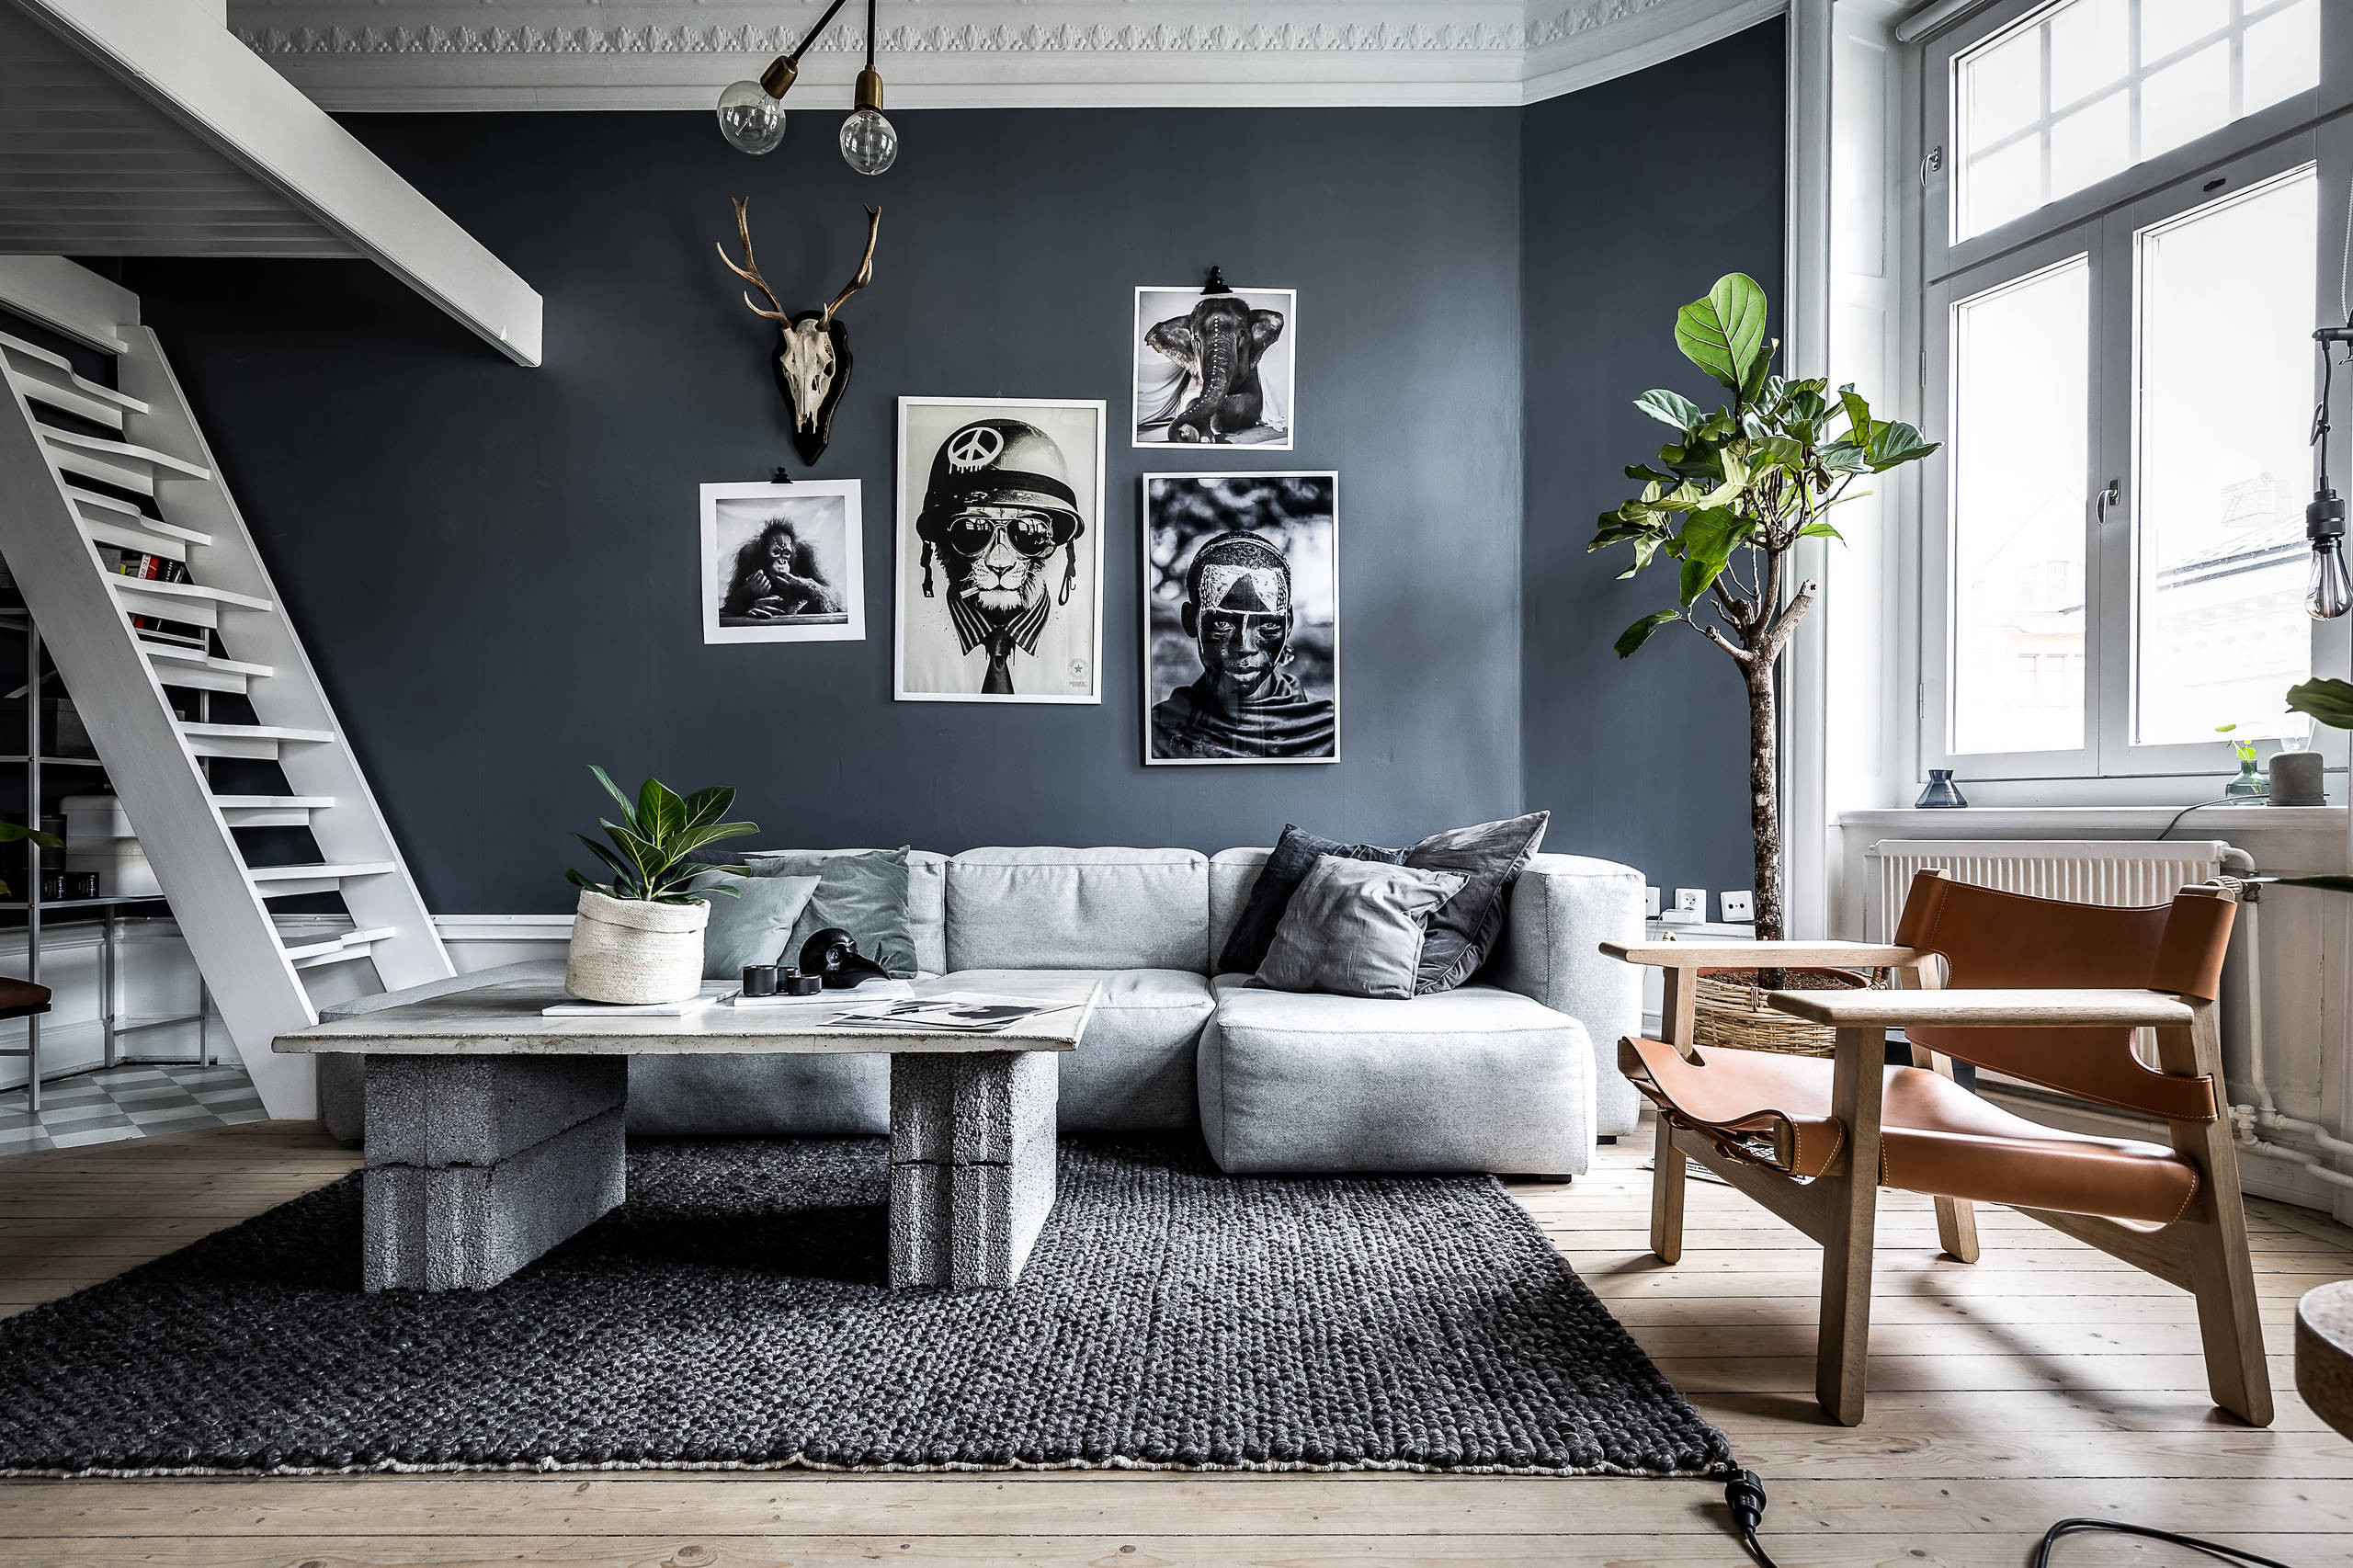 Shades Of Grey: 9 Tipps Für Dunkle Wände Im Wohnzimmer intended for Wand Wohnzimmer